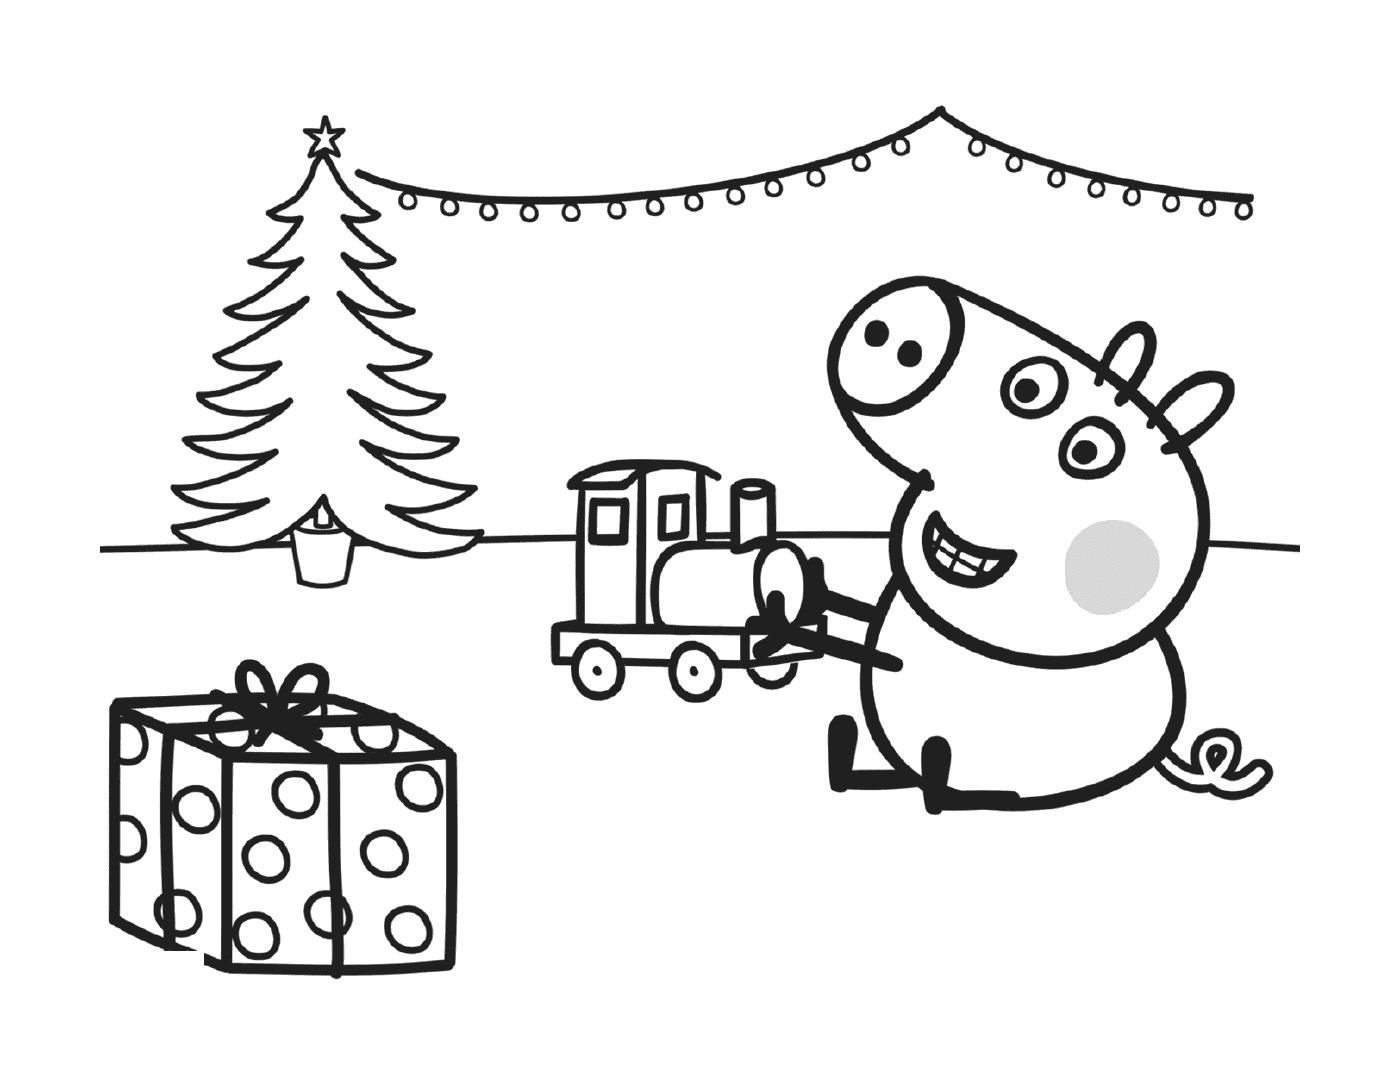   George joue avec son cadeau de Noël, un train 